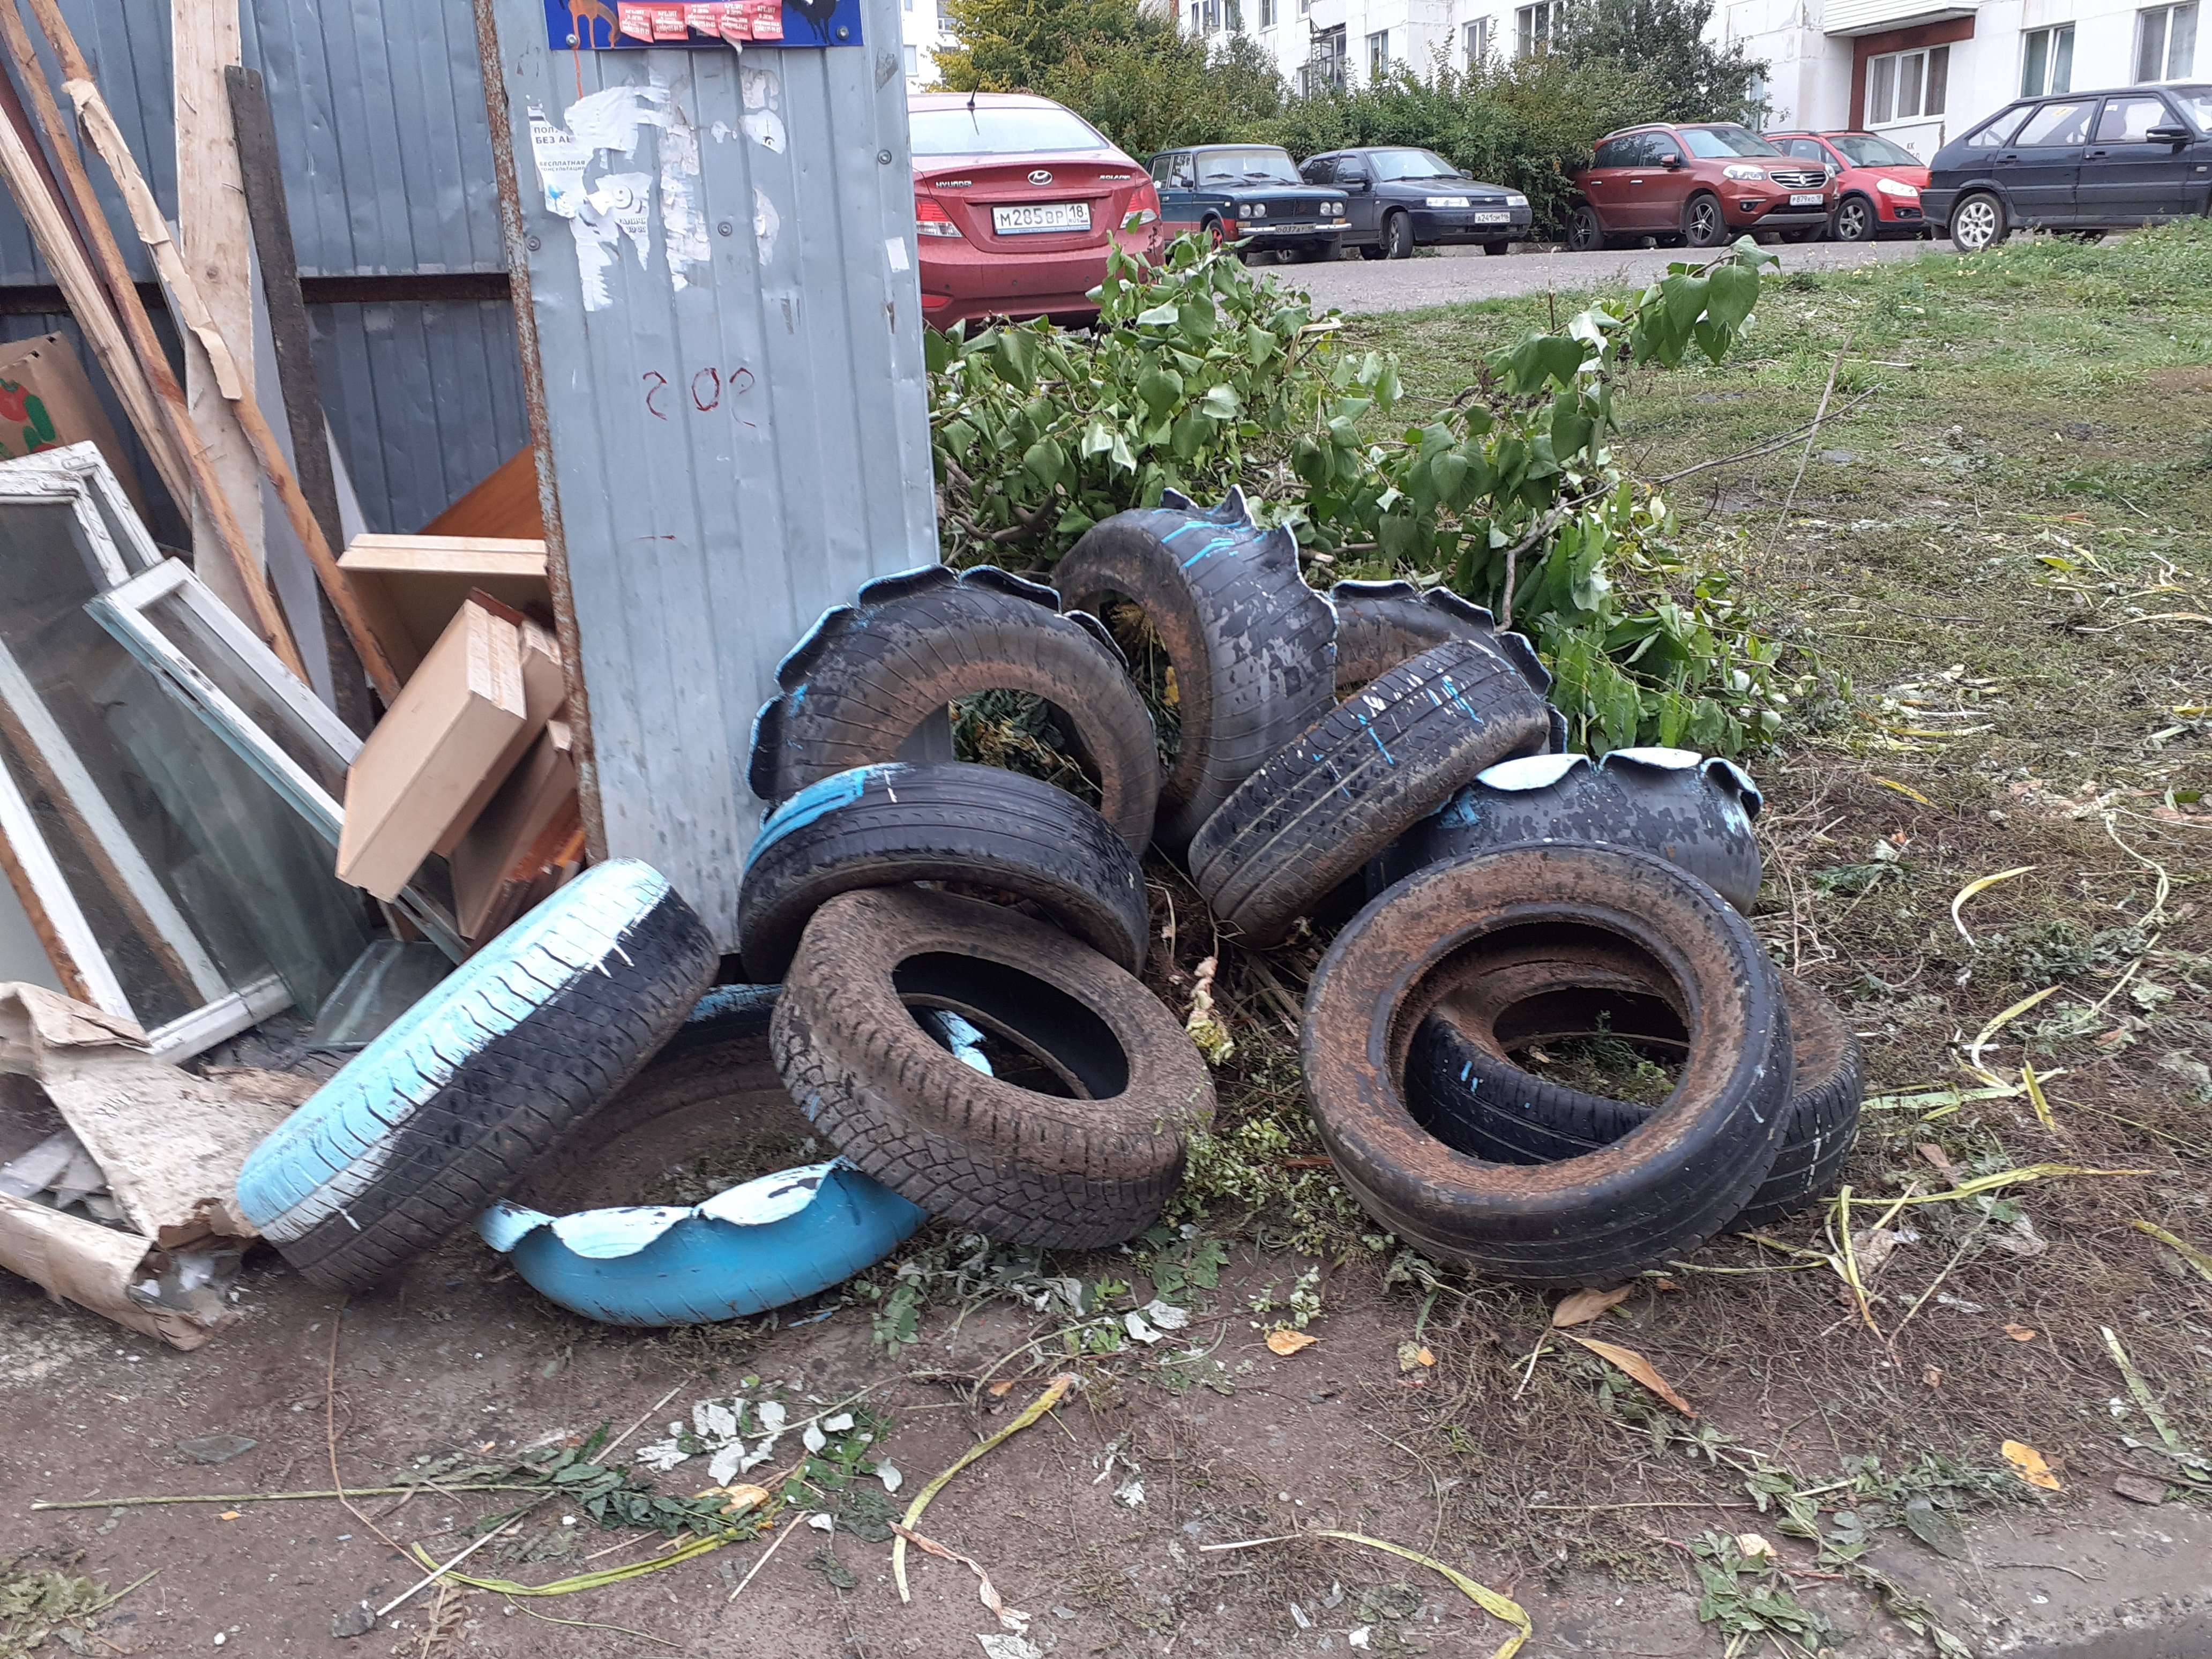 

В Ижевске старые автопокрышки должны исчезнуть из дворов до 1 июня 2022 года

